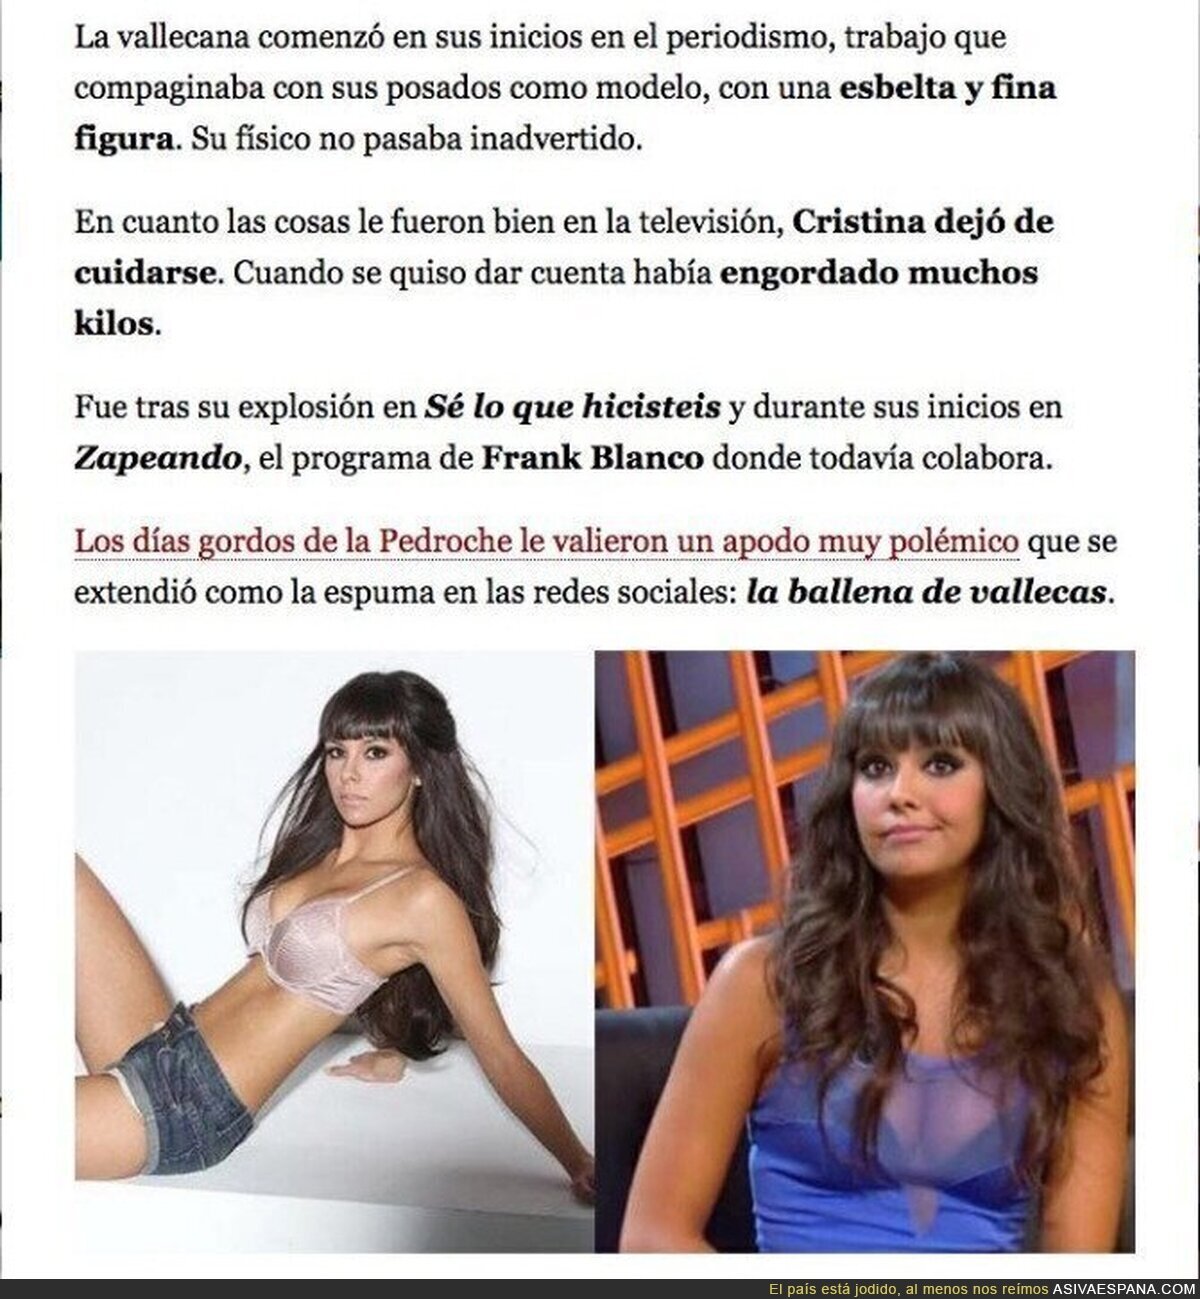 El polémico artículo sobre Cristina Pedroche y su peso que ha indignado a todo el mundo